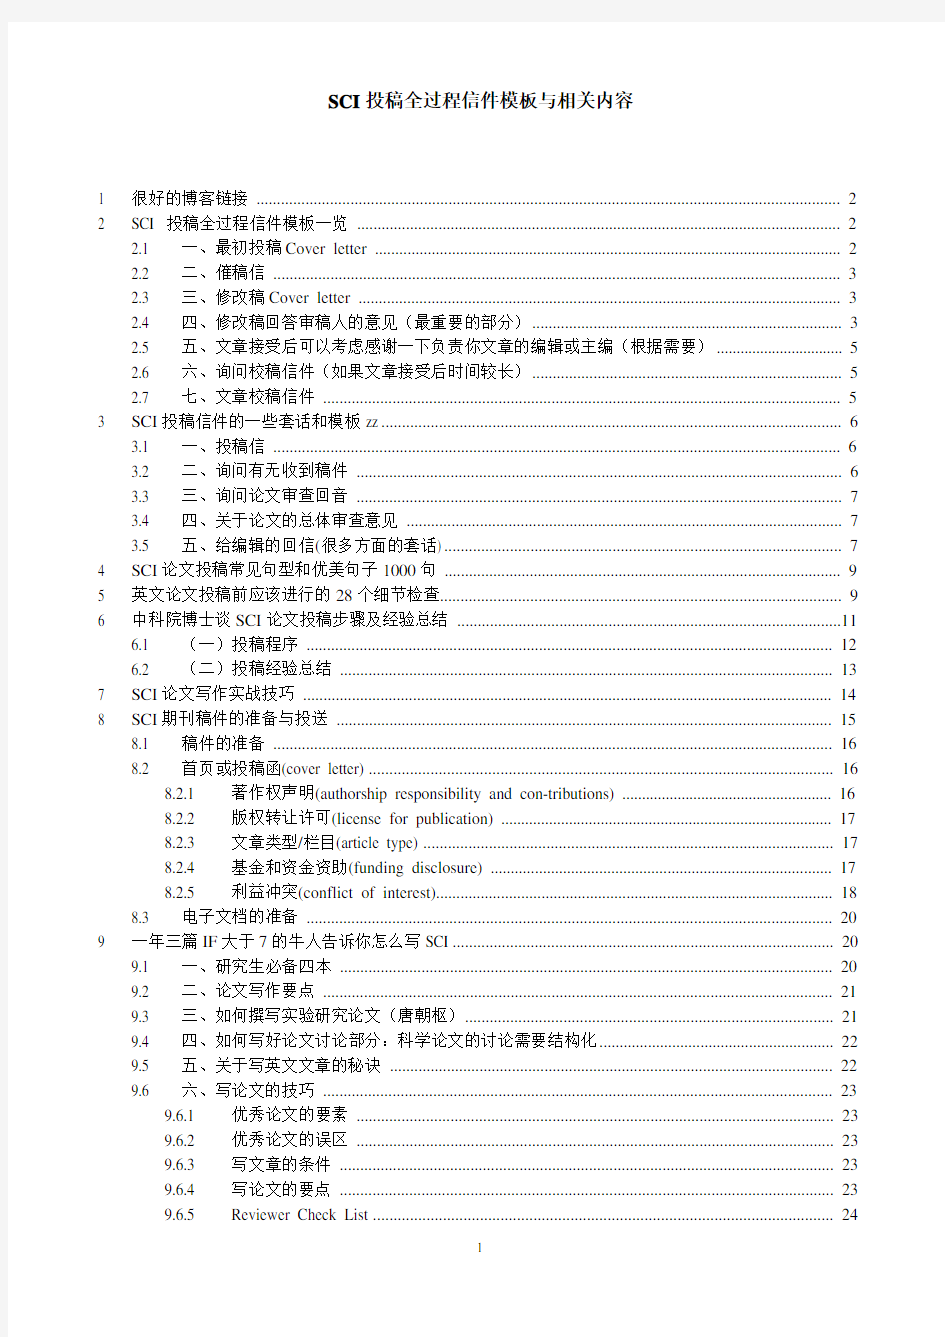 SCI投稿全过程信件模板与相关内容(2013版)